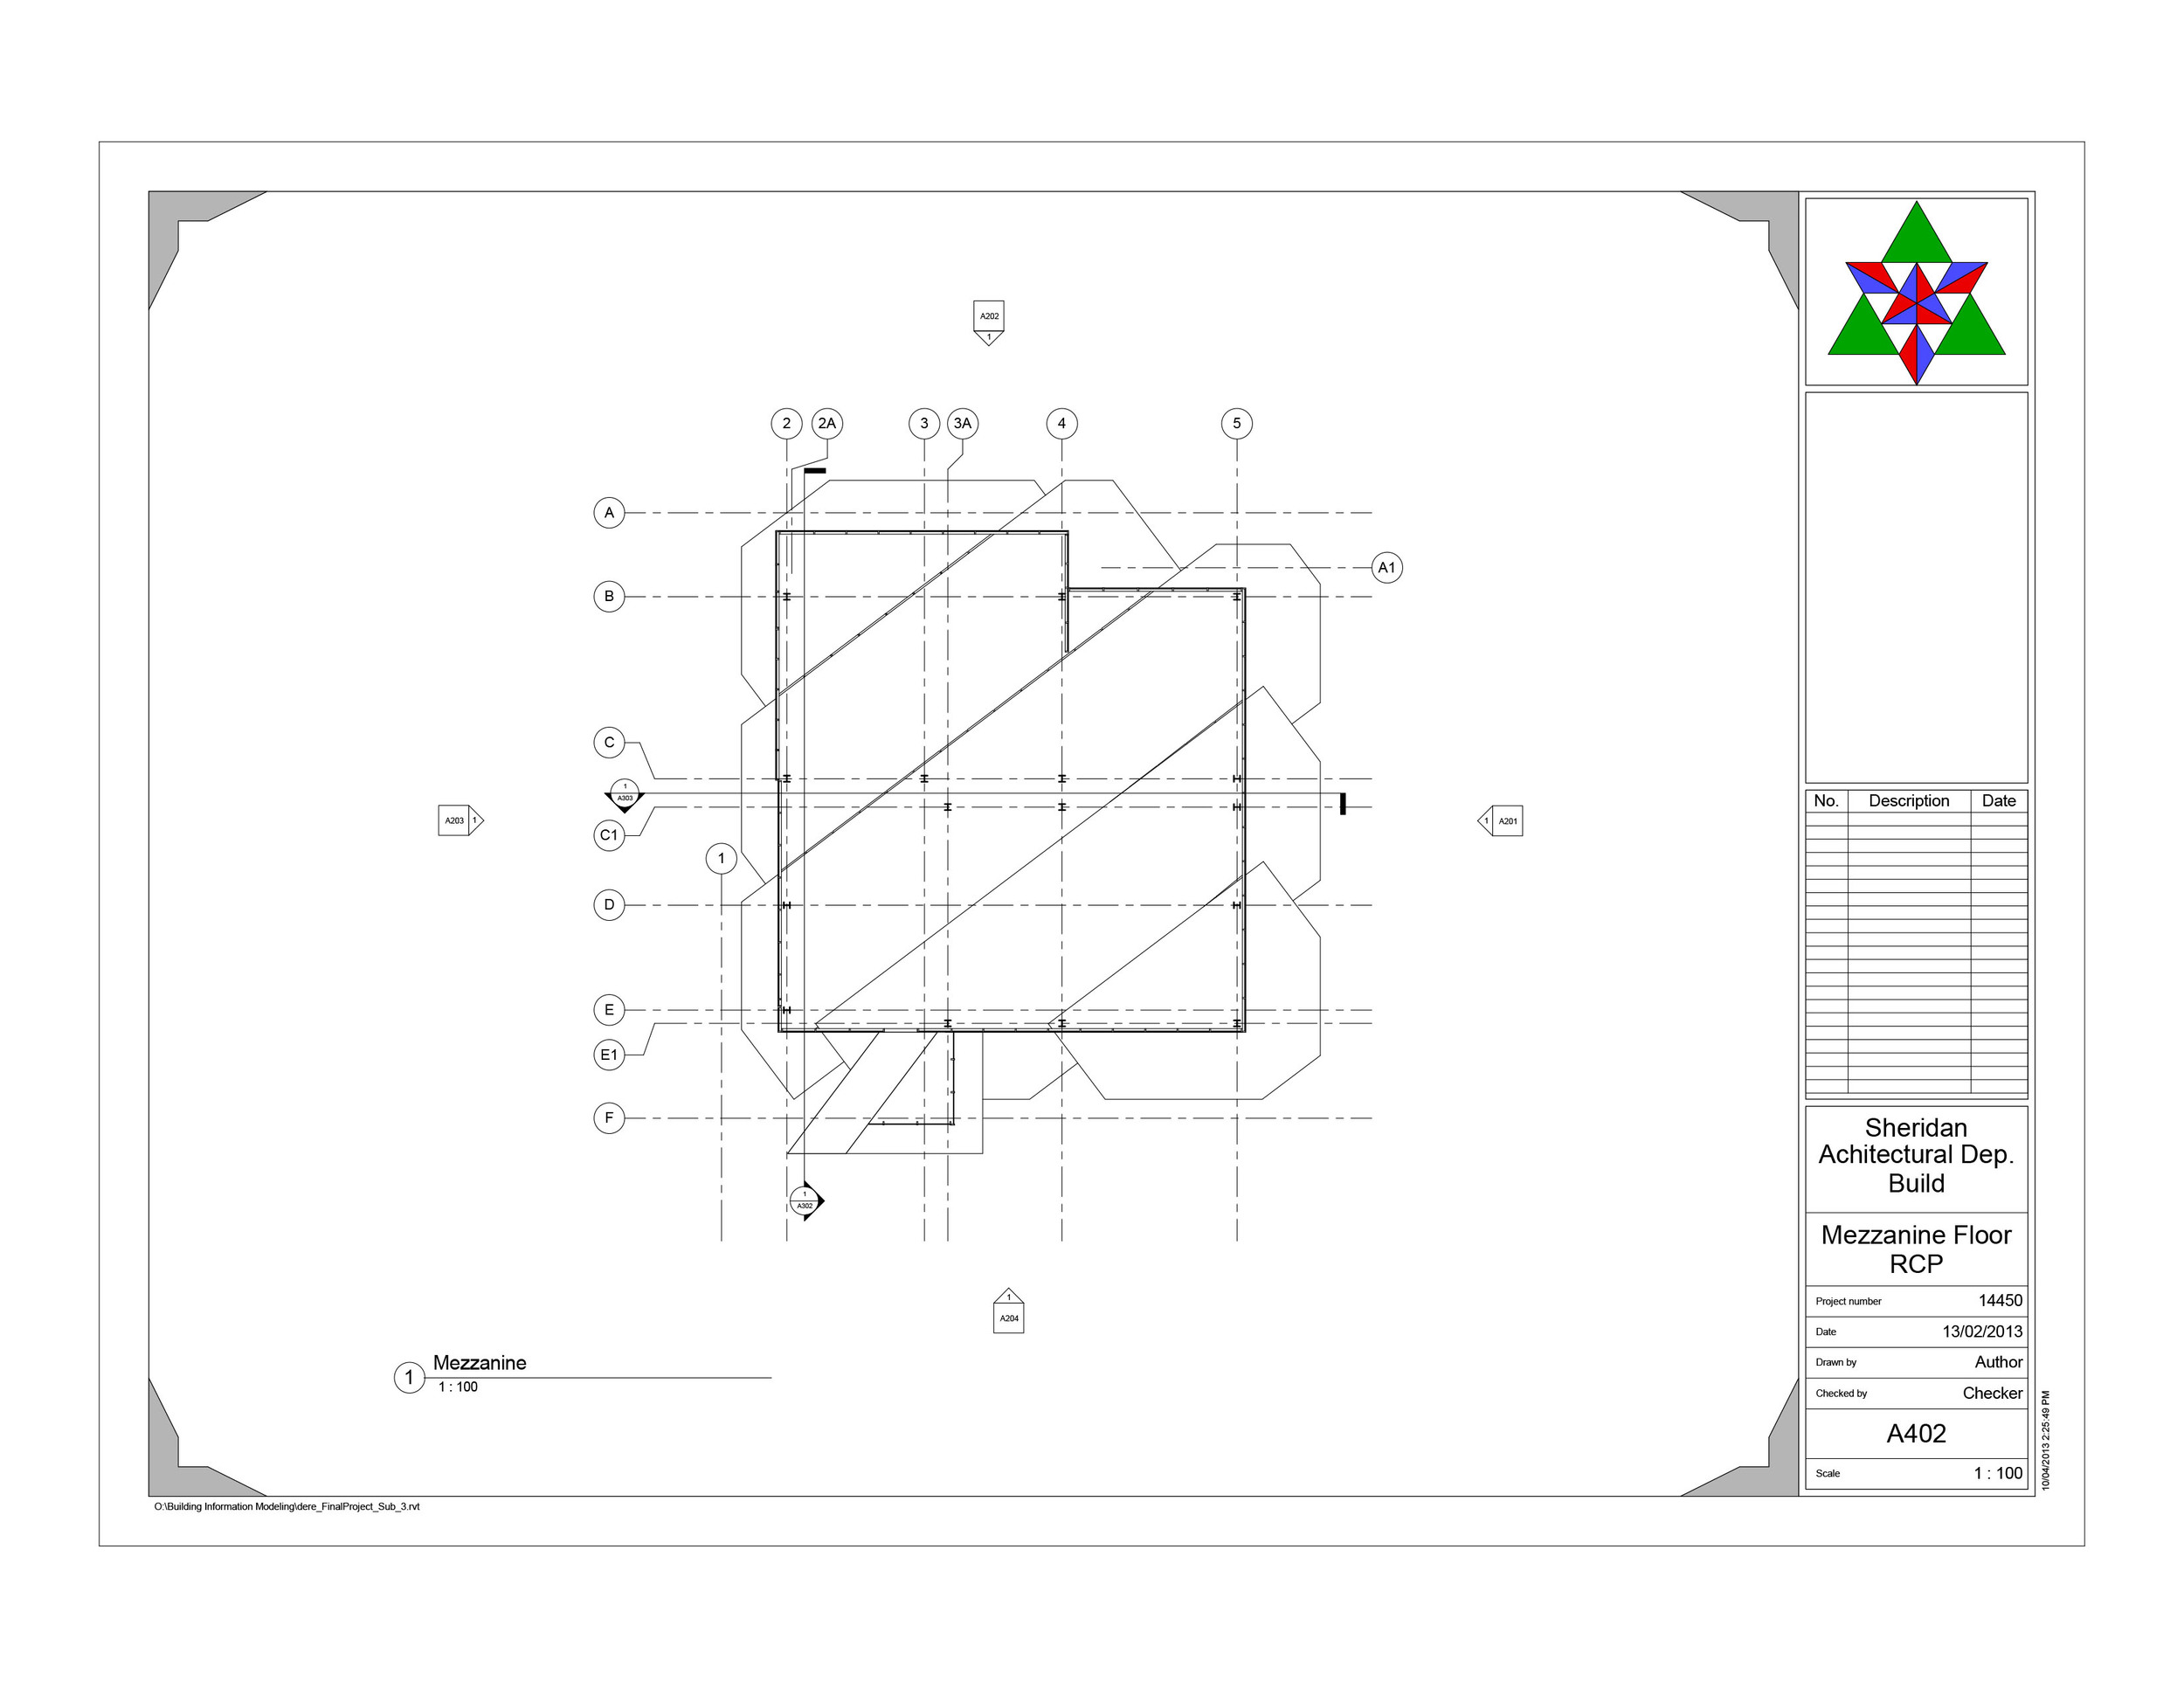 dere_FinalProject  - Sheet - A402 - Mezzanine Floor RCP.jpg